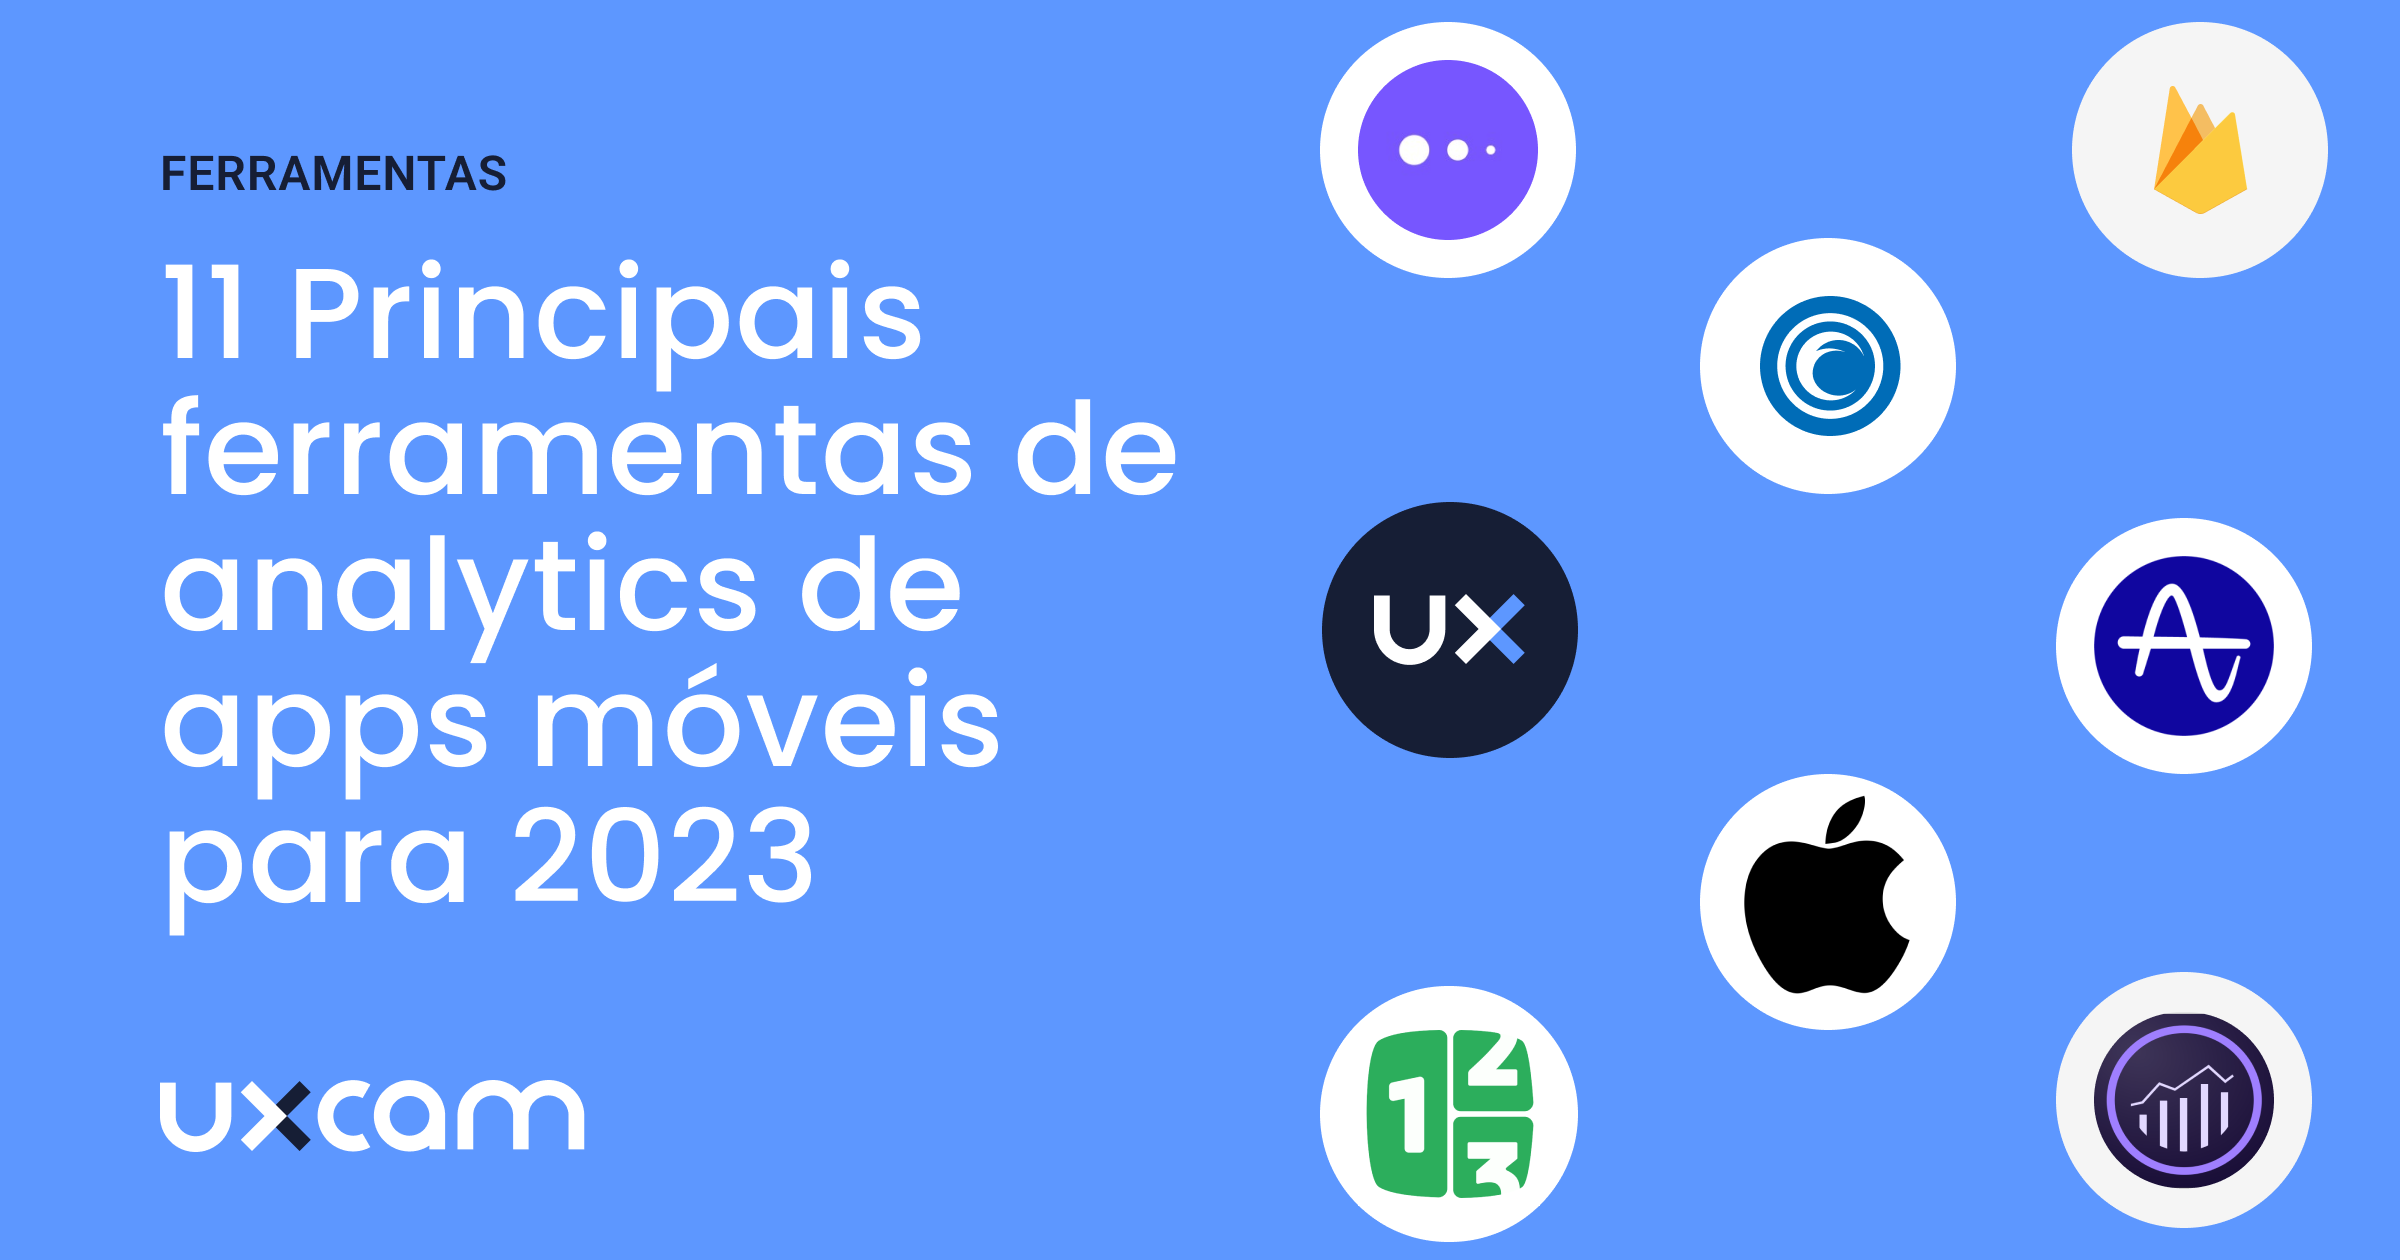 Pesquisa sobre aplicativos no Brasil: dados de 2022